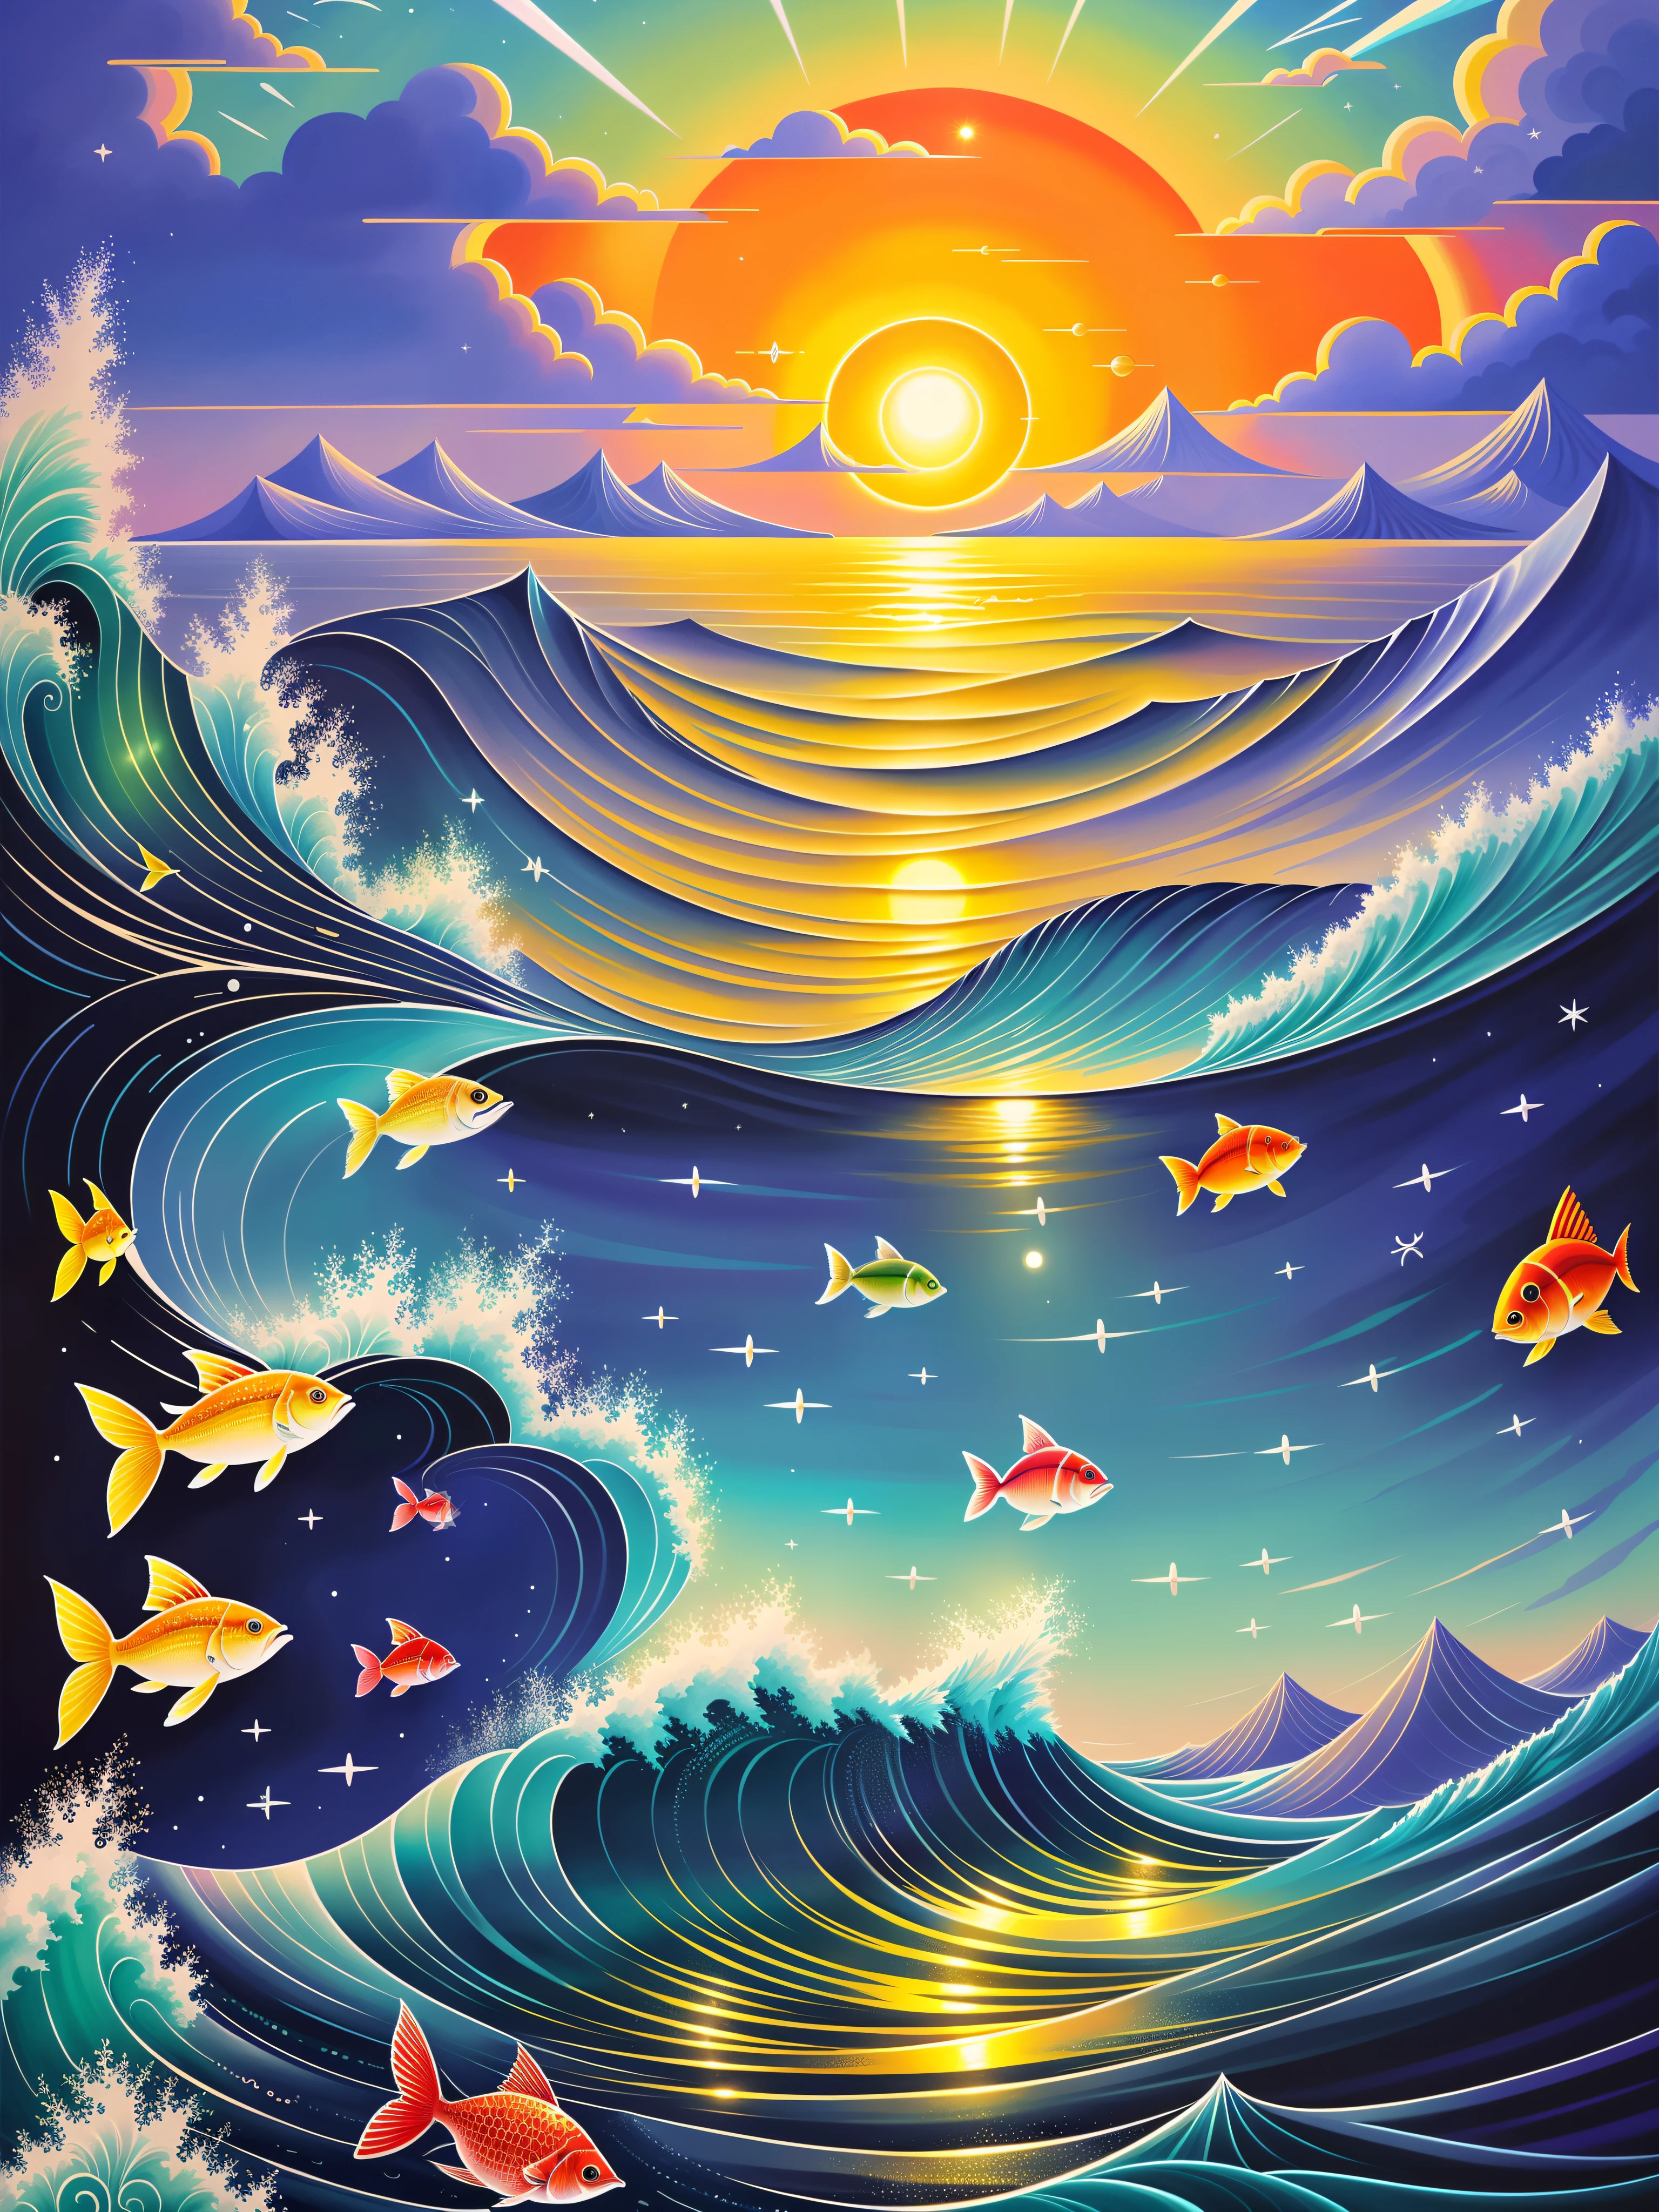 Cena do oceano com ilustração colorida de sol e peixes, （（（lua cheia））），Muitos peixes，só uma piada, uma bela ilustração de arte, oceano mágico, Inspirado por Cirilo Rolando, paisagem do mar de fantasia, Bela arte UHD 8K, pintura digital altamente detalhada, no estilo de Cyril Rolando, Arte digital altamente detalhada em 8K, paisagem de sonho detalhada, Colorido, plano, surreal, etéreo, cenário caótico do mar